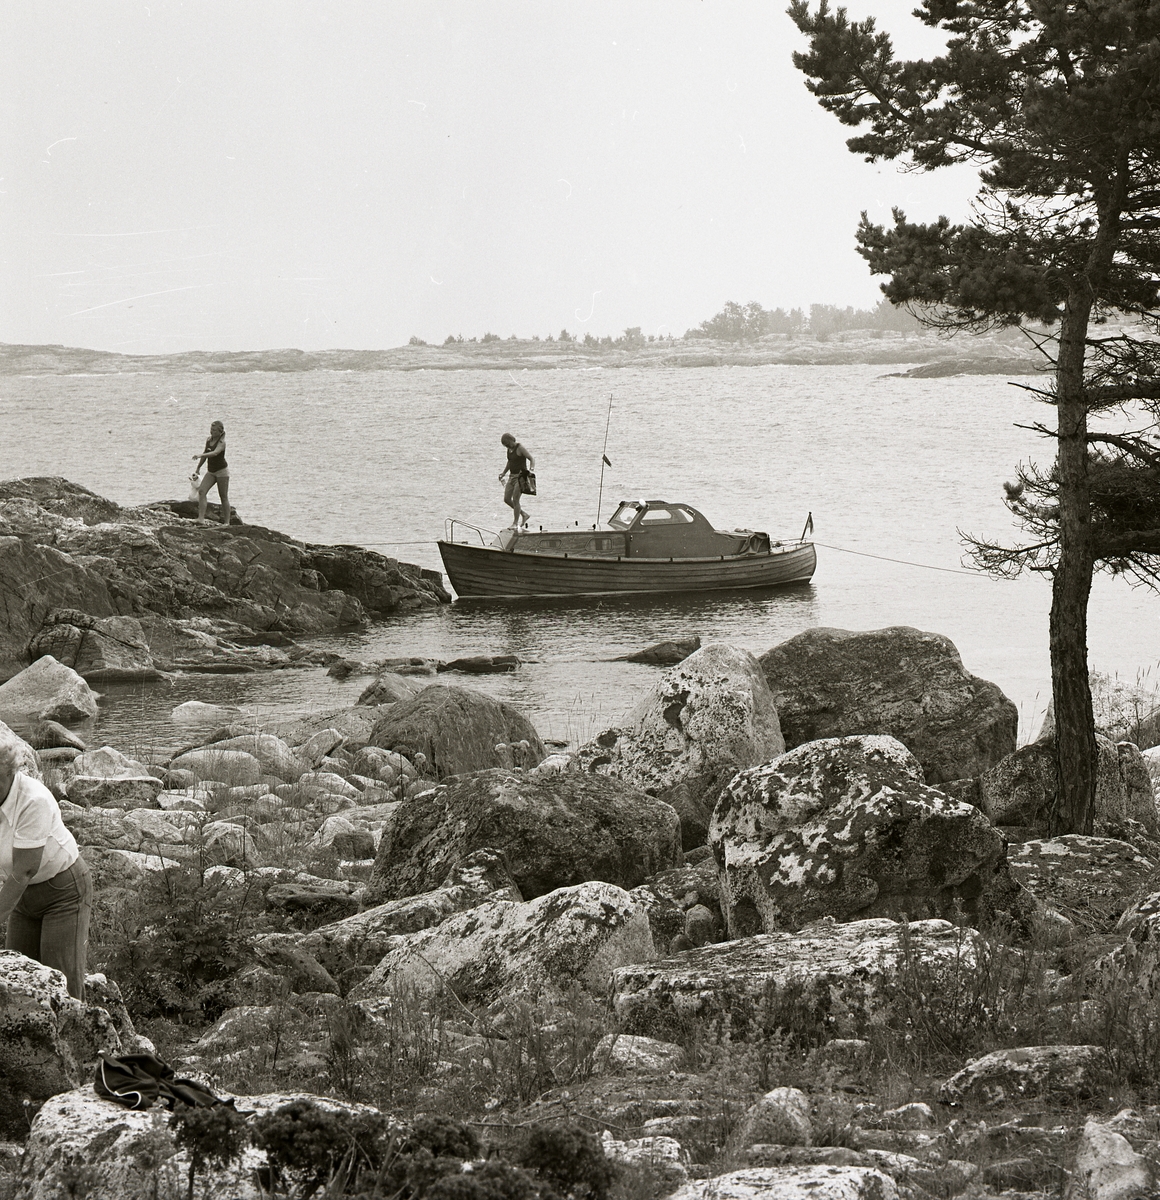 Invid en stenhäll i Gästriklands skärgård har en båt lagt till och två personer kliver iland. I förgrunden står en tall bredvid en stenröse och en tredje person skymtar förbi i vänstra hörnet. Bakgrunden fylls av havet och närliggande stenhällar.